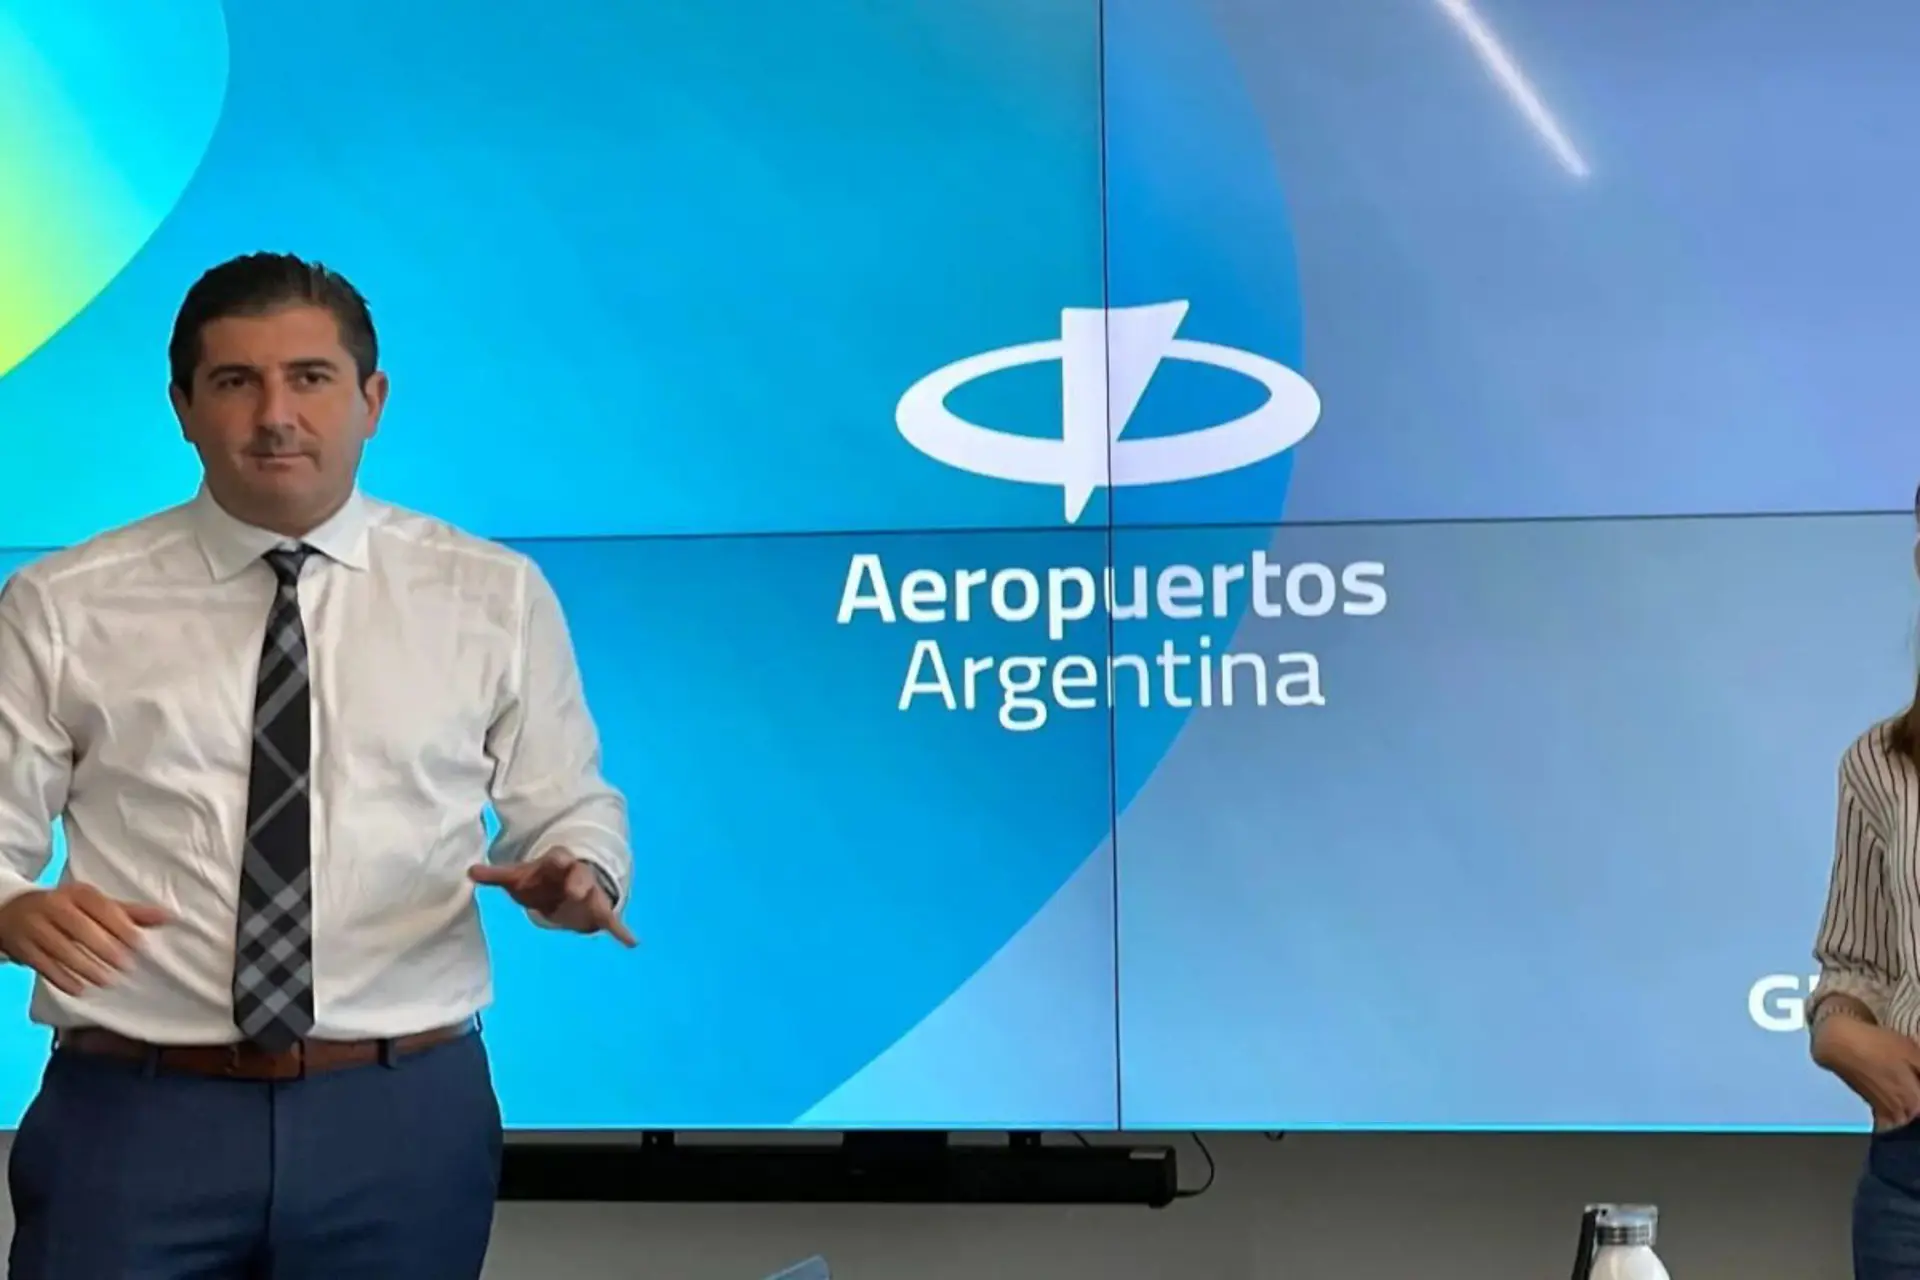 Nueva marca: Aeropuertos Argentina 2000 ahora es “Aeropuertos Argentina